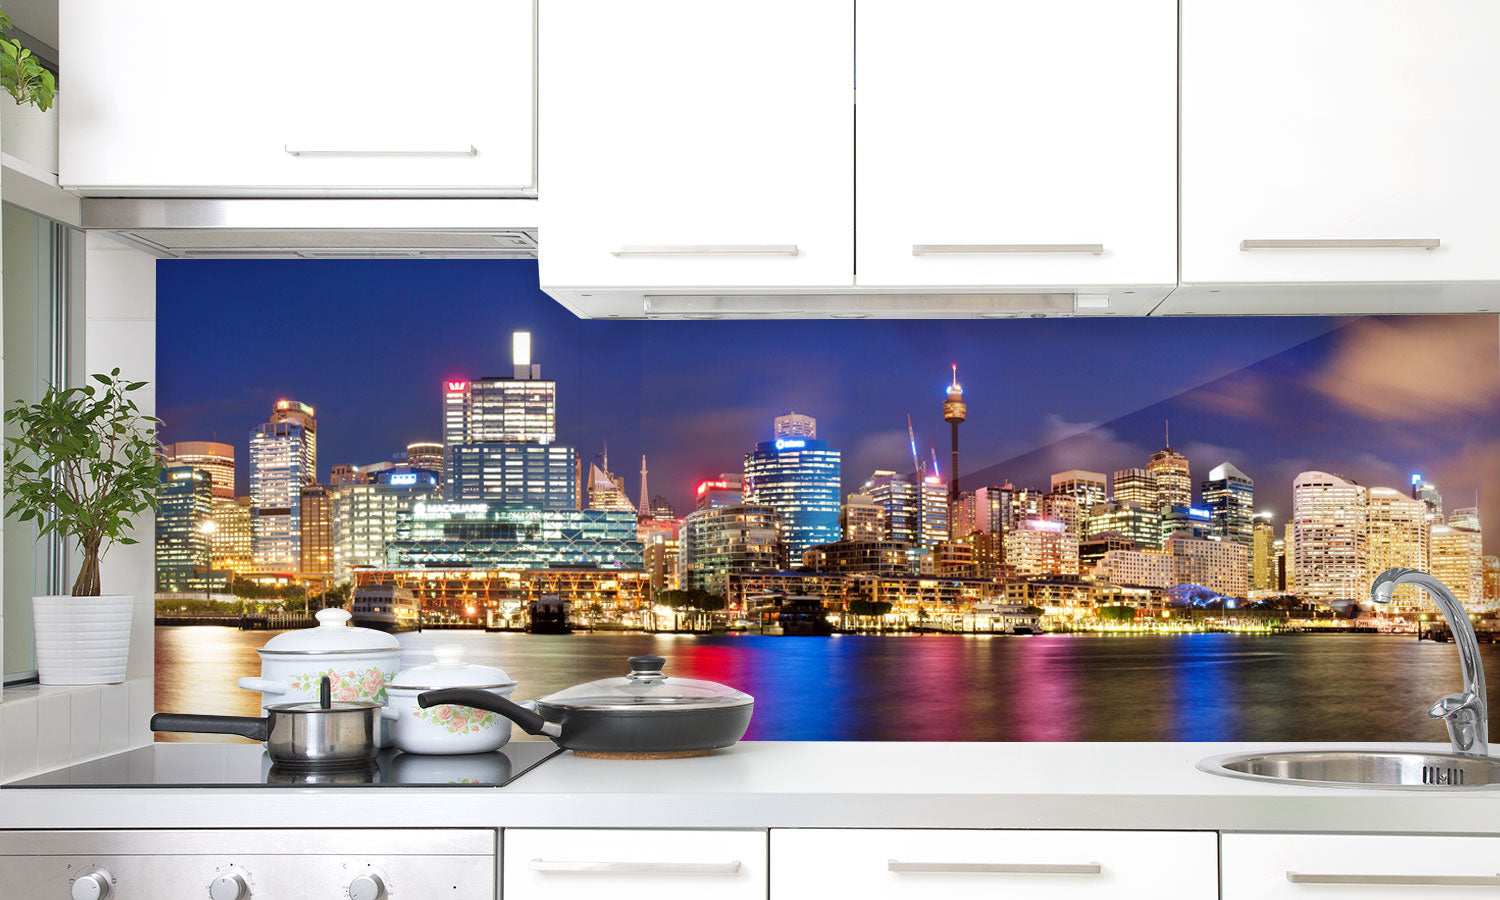 Kuhinjski paneli  Sydney Australia - Stekleni / PVC plošče / Pleksi steklo - s tiskom za kuhinjo, Stenske obloge PKU030 - Life-decor.si